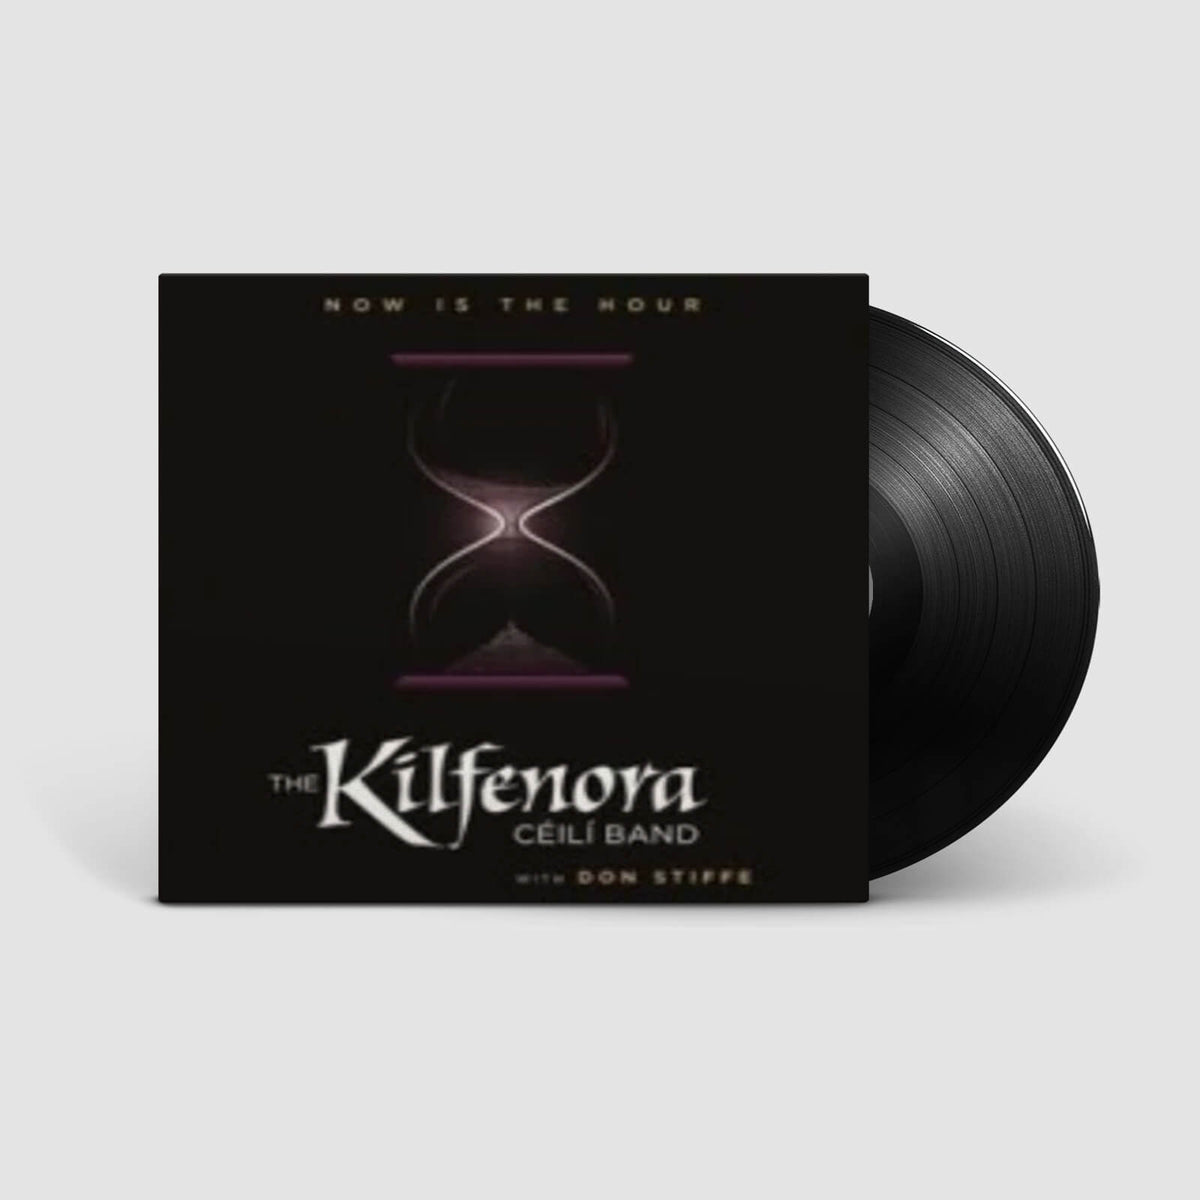 The Kilfenora Céilí Band : Now is the Hour (LP)